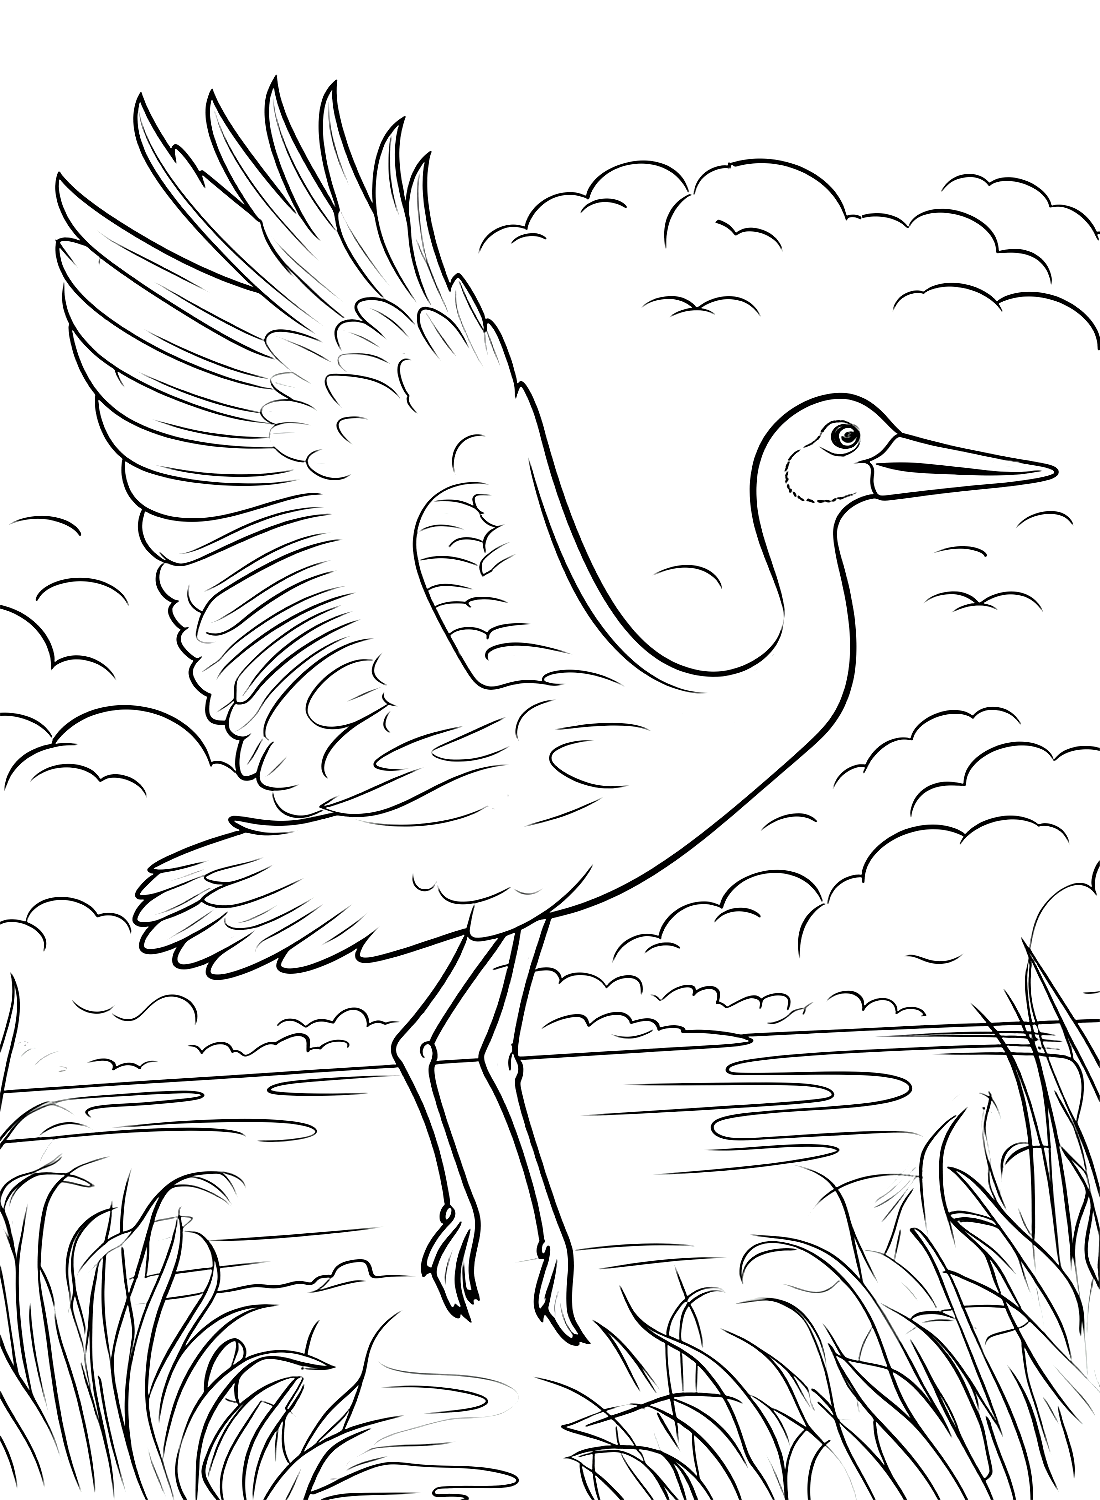 A Stork in Flight from Stork